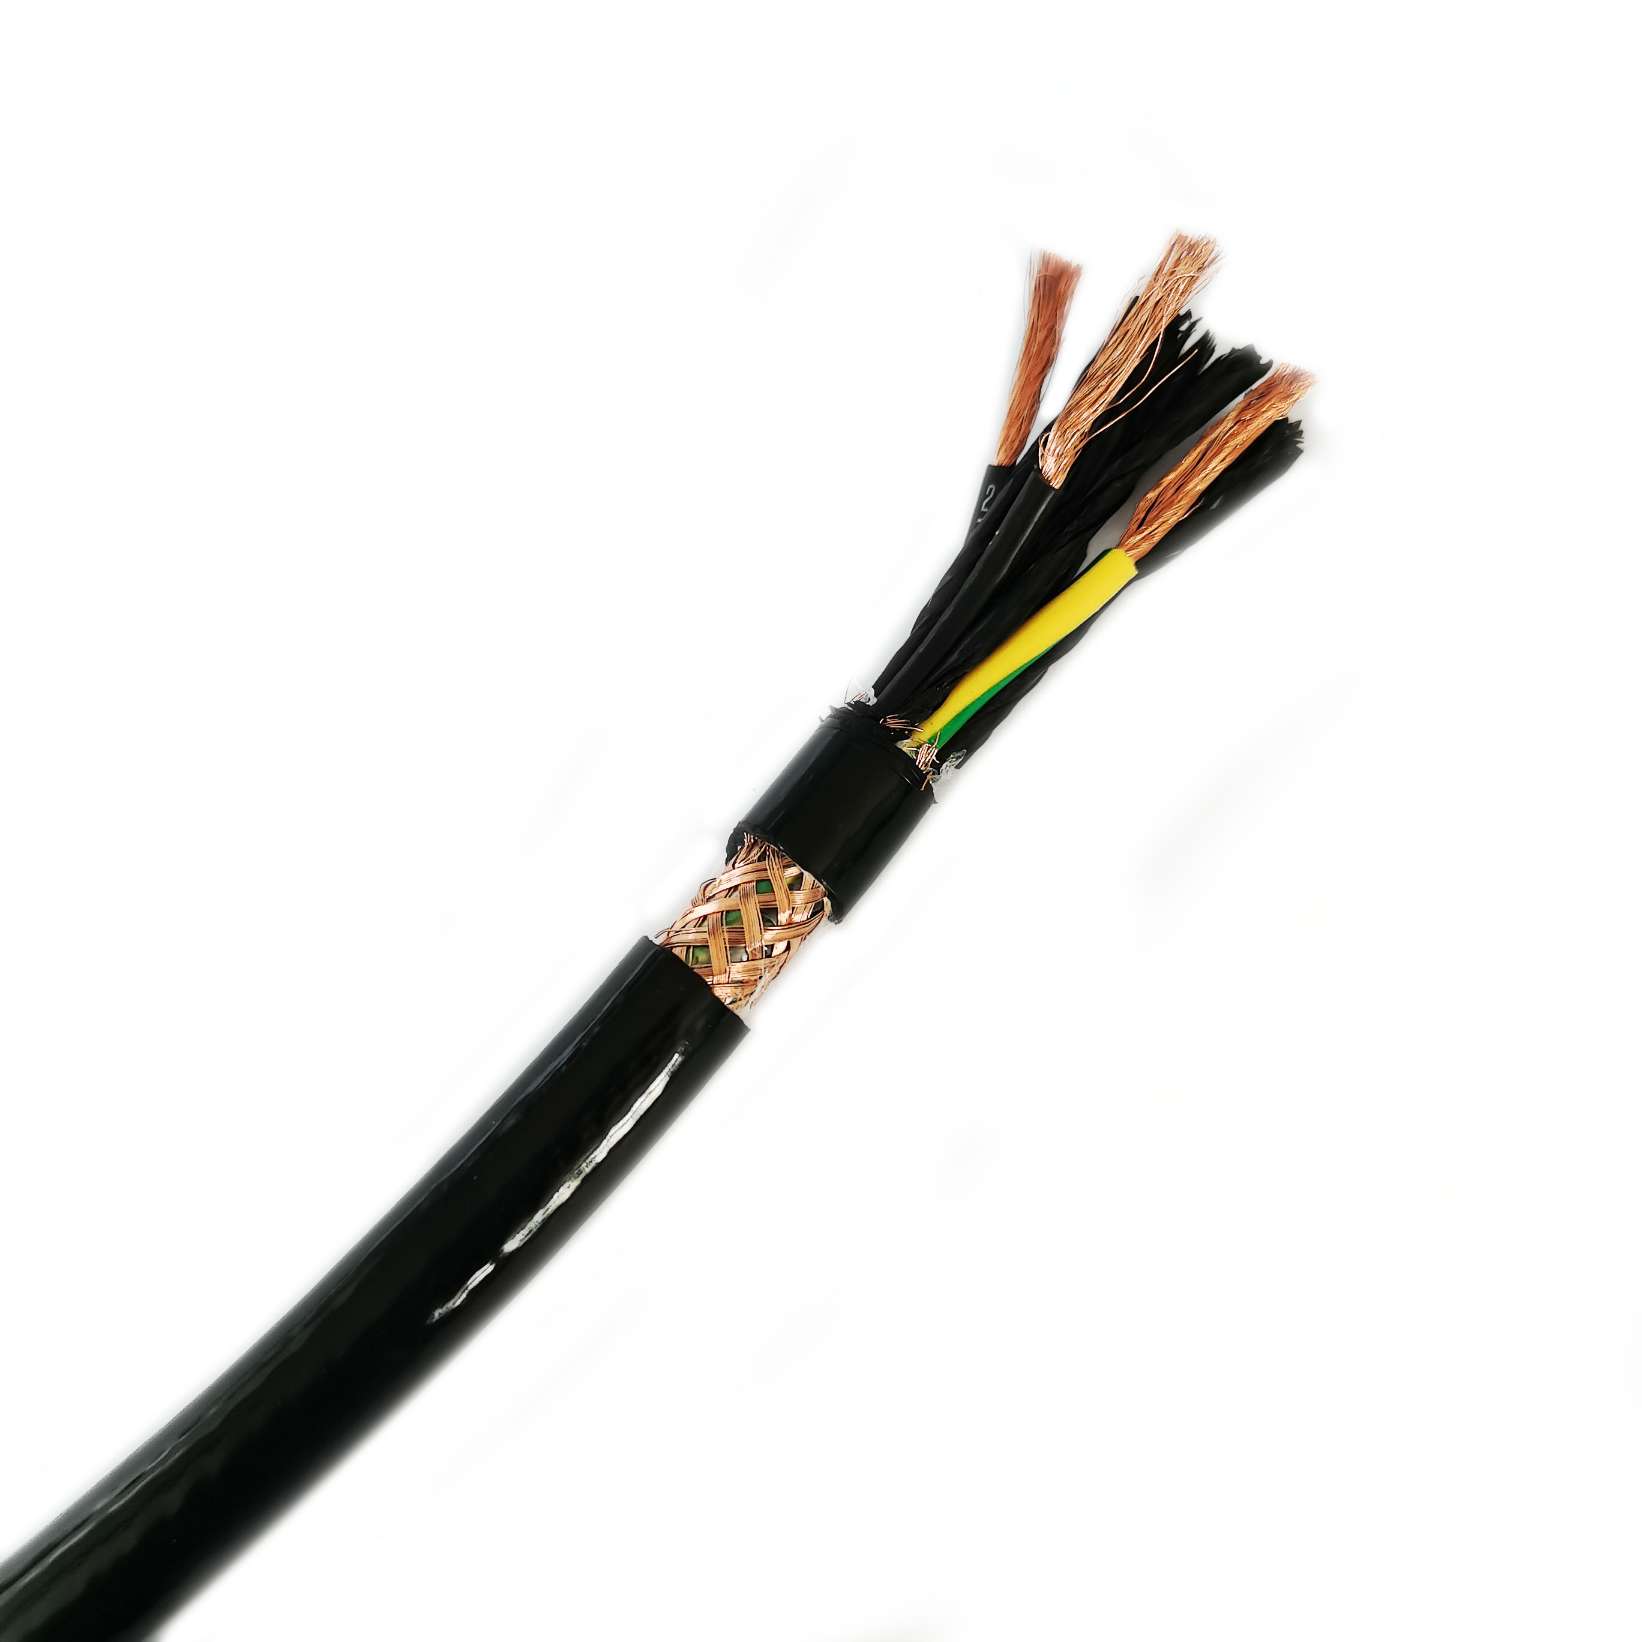 Welche Vorteile hat die Verwendung von PUR-Kabeln gegenüber anderen Kabeltypen?